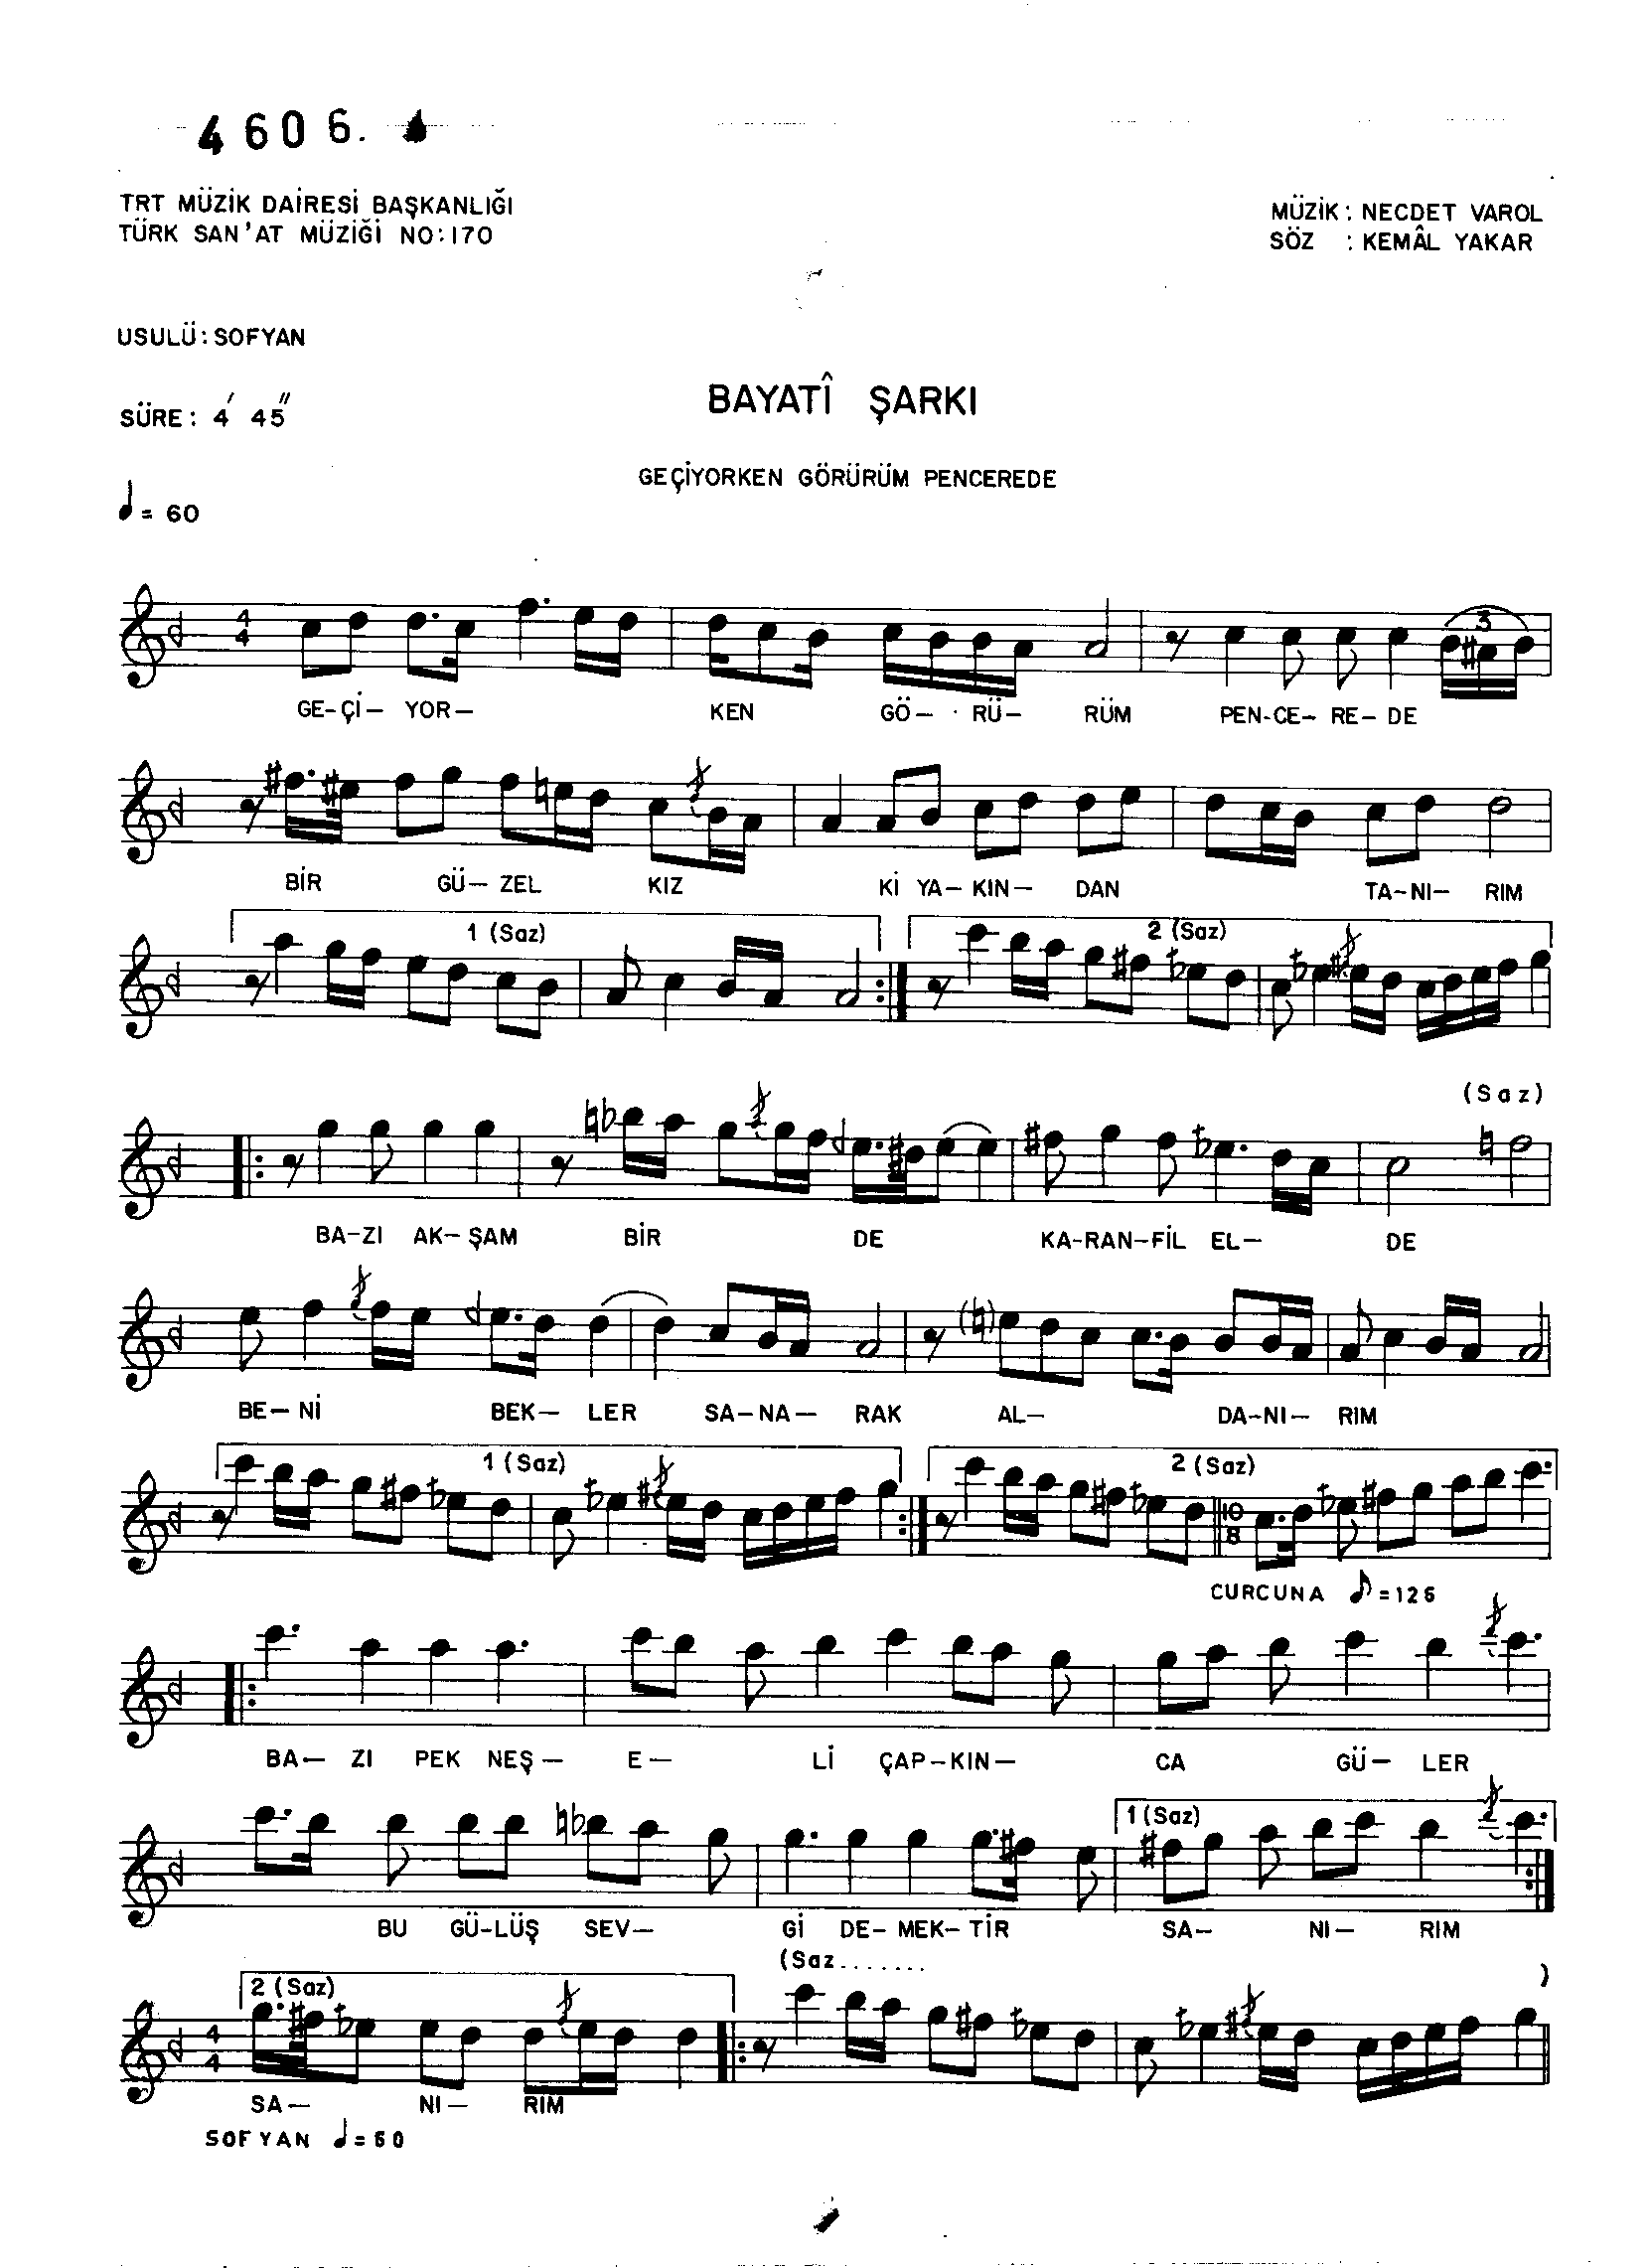 Beyâtî - Şarkı - Necdet Varol - Sayfa 1